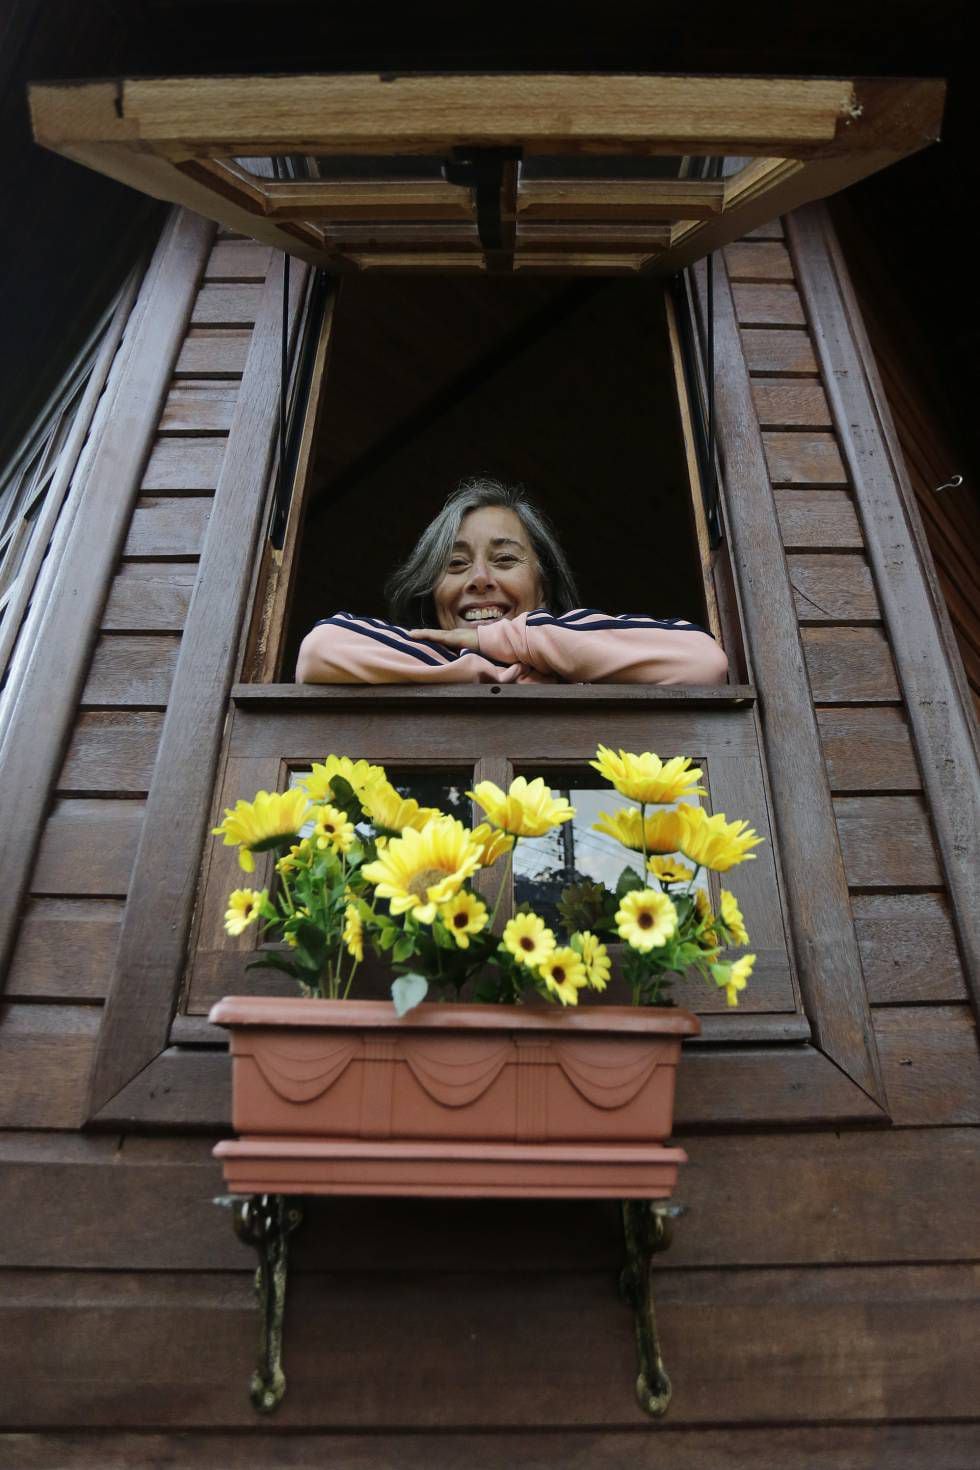 A professora aposentada Mônica Tavares, de 62 anos, se mudou para Nova Petrópolis em busca de tranquilidade e uma melhor qualidade de vida.